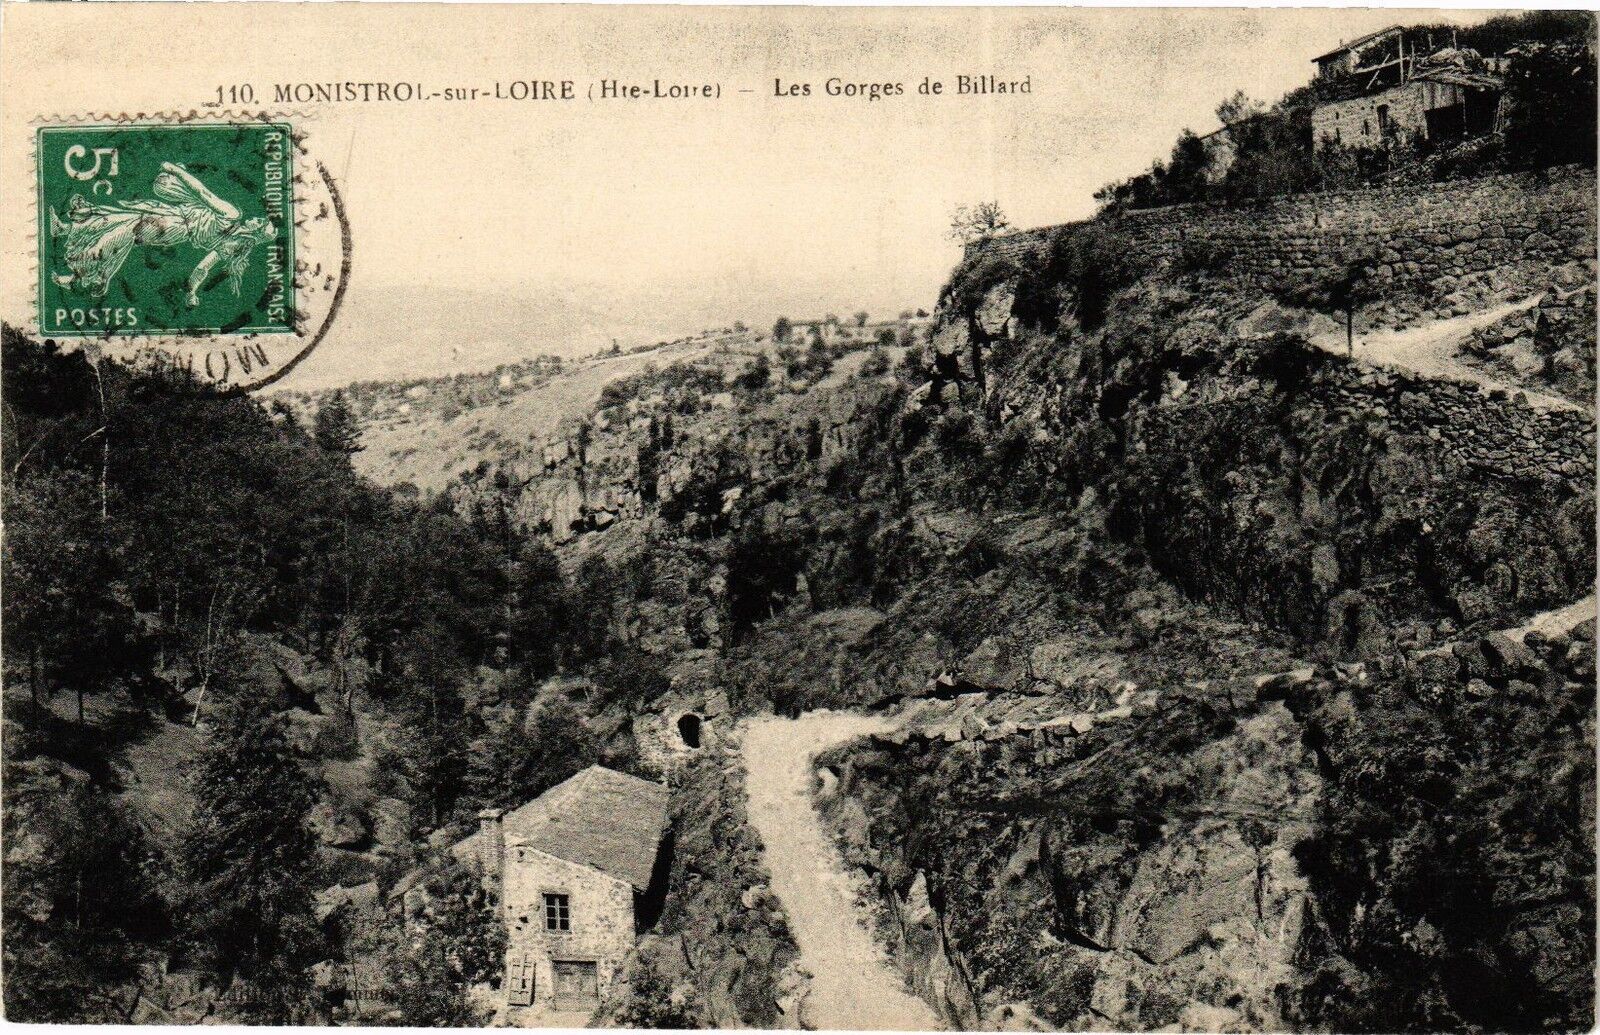 CPA MONISTROL-sur-LOIRE (Hte-Loire) - Les Gorges de Billiard (202850)